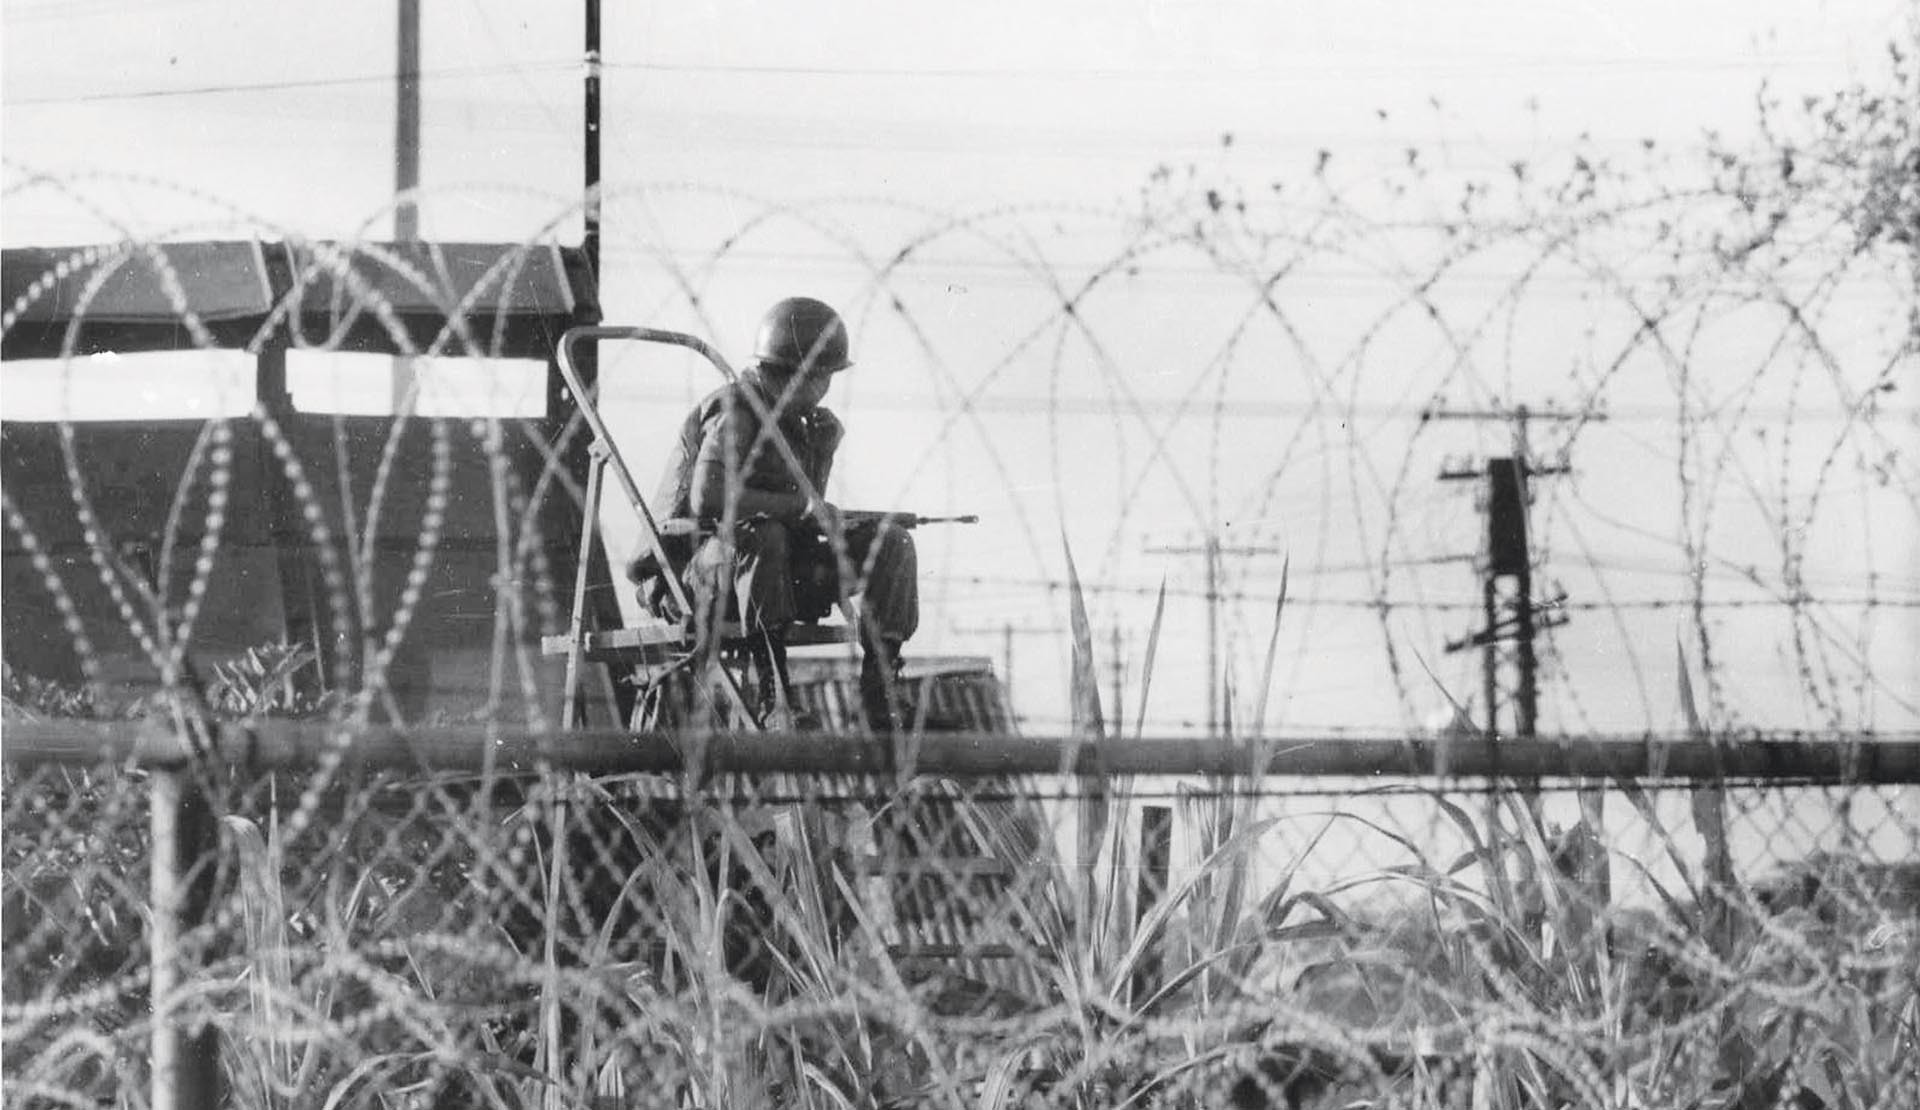 Khi hai Đoàn đại biểu quân sự ta tiếp quản ngày 28/01/1973, xung quanh Trại Davis có 13 tháp canh của quân đội Sài Gòn. Tấm ảnh chụp một trong 13 tháp canh lúc đó.